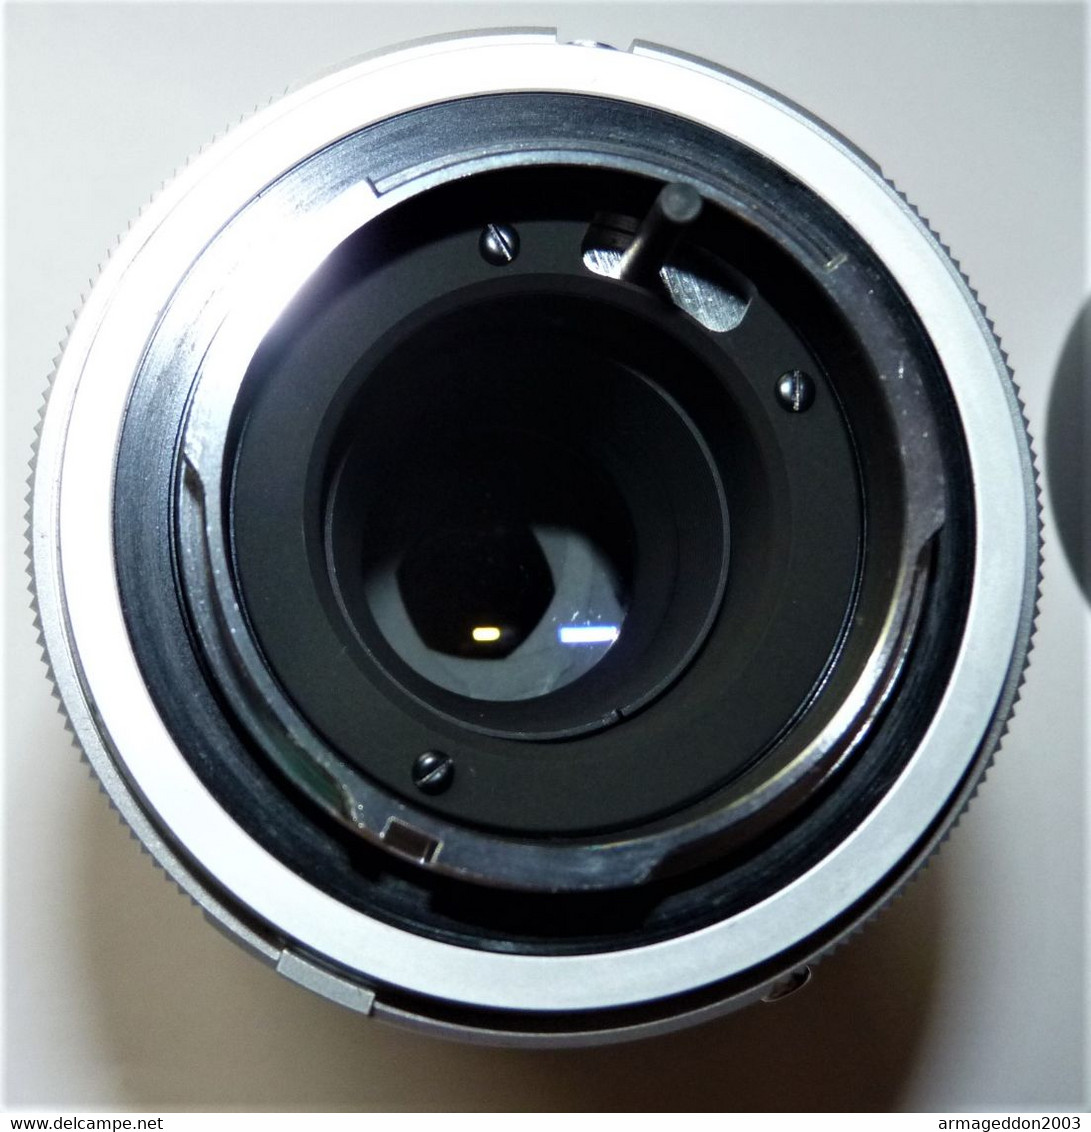 OBJECTIF MINOLTA MC TELE ROKKOR 135 mm f 3.5 lens DANS SON ETUI EN CUIR TBE